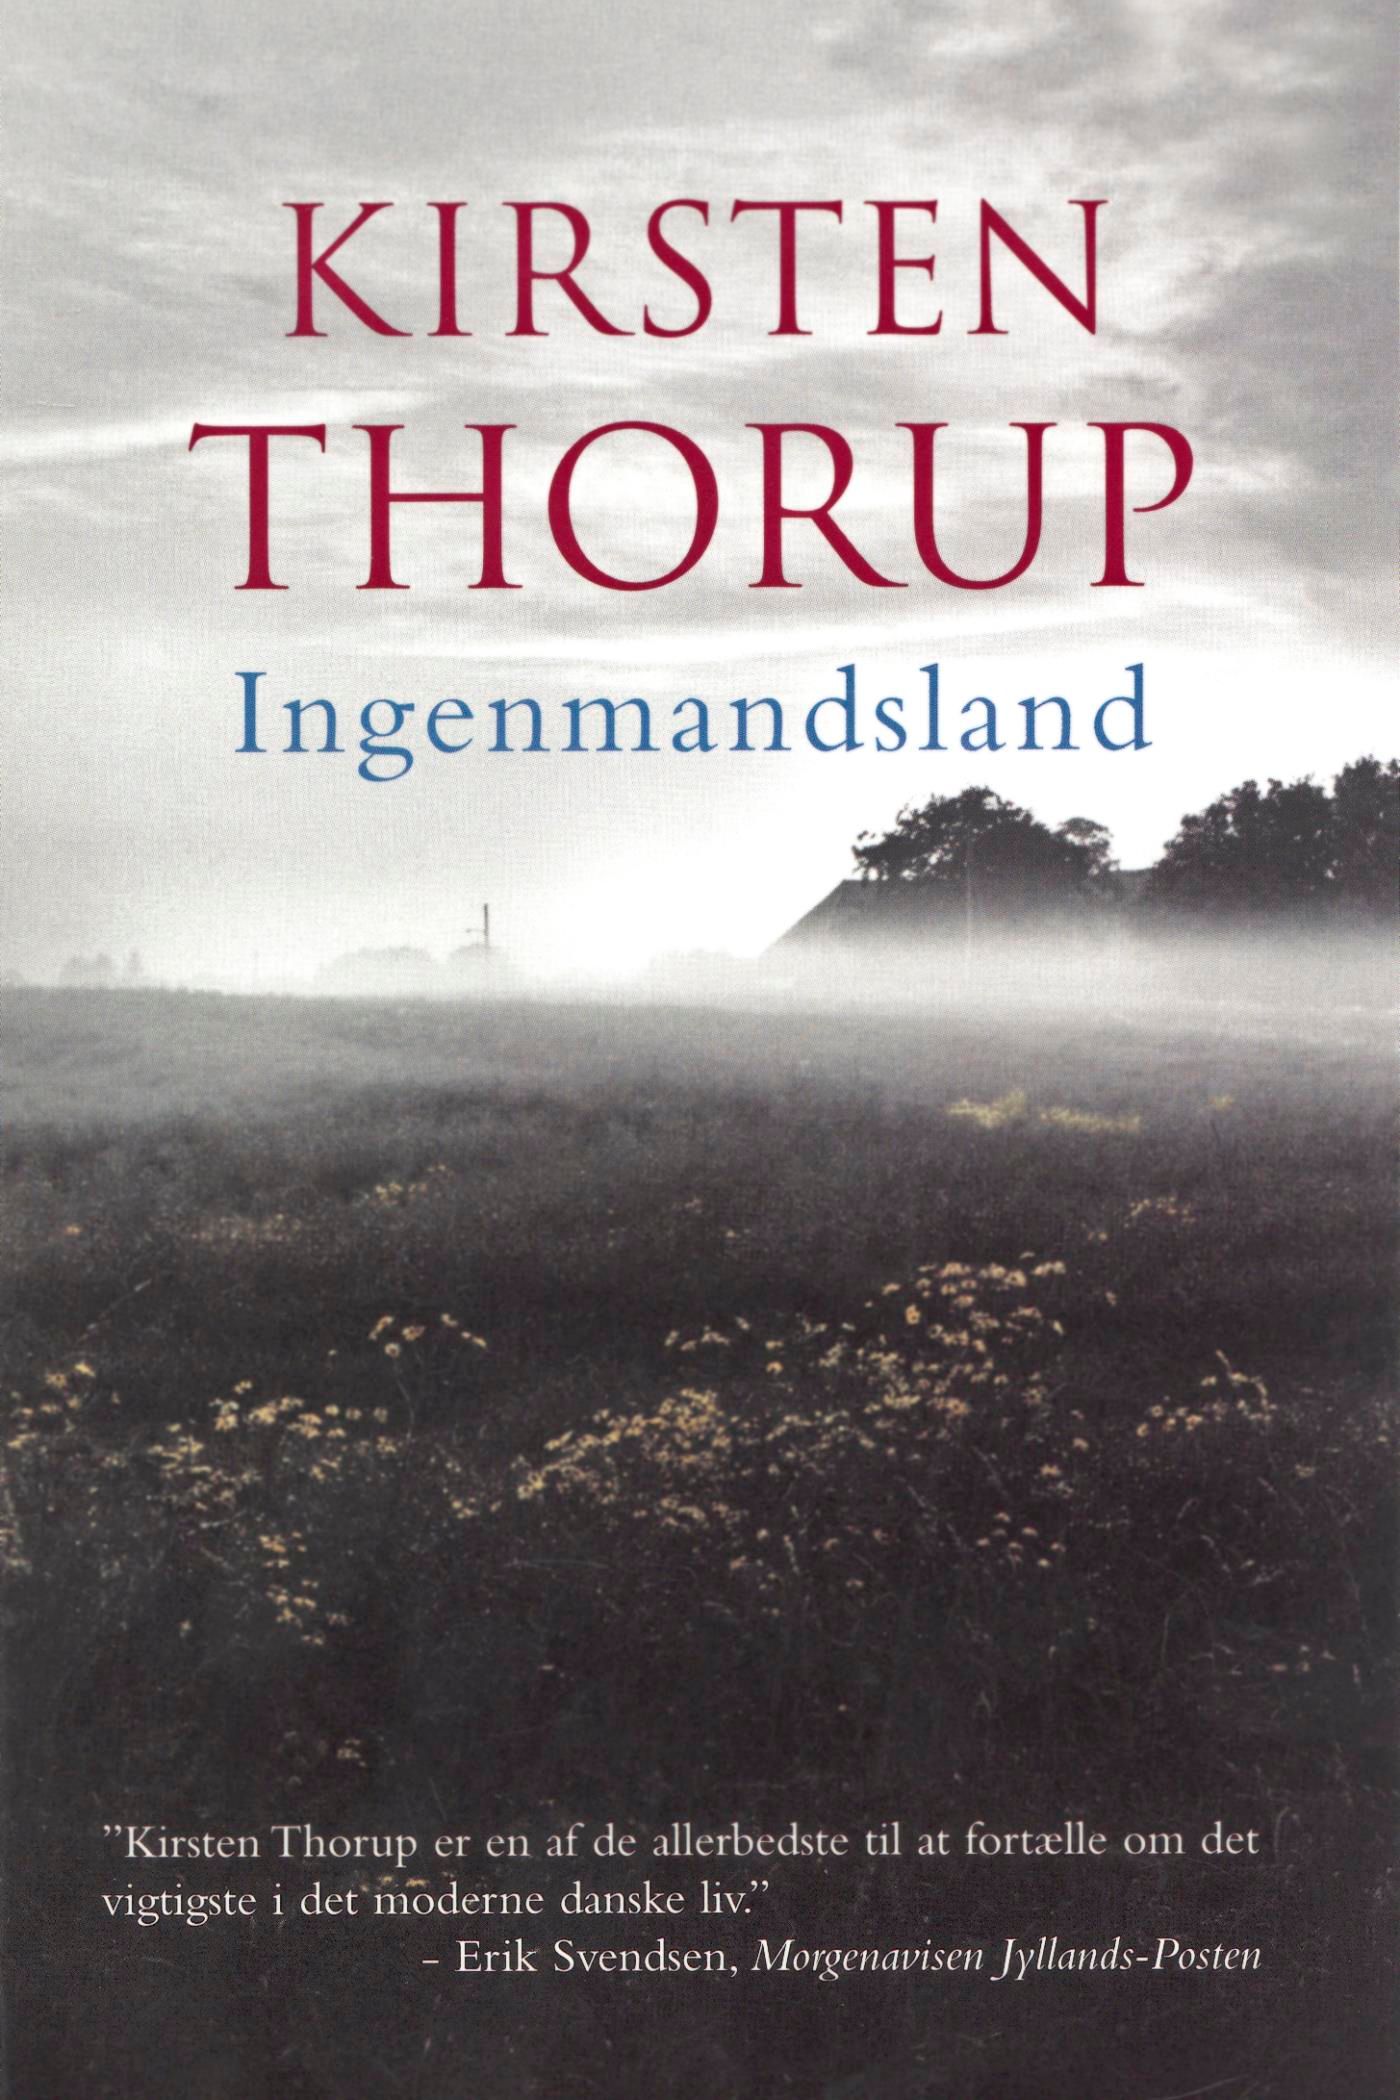 Ingenmandsland, eBook by Kirsten Thorup